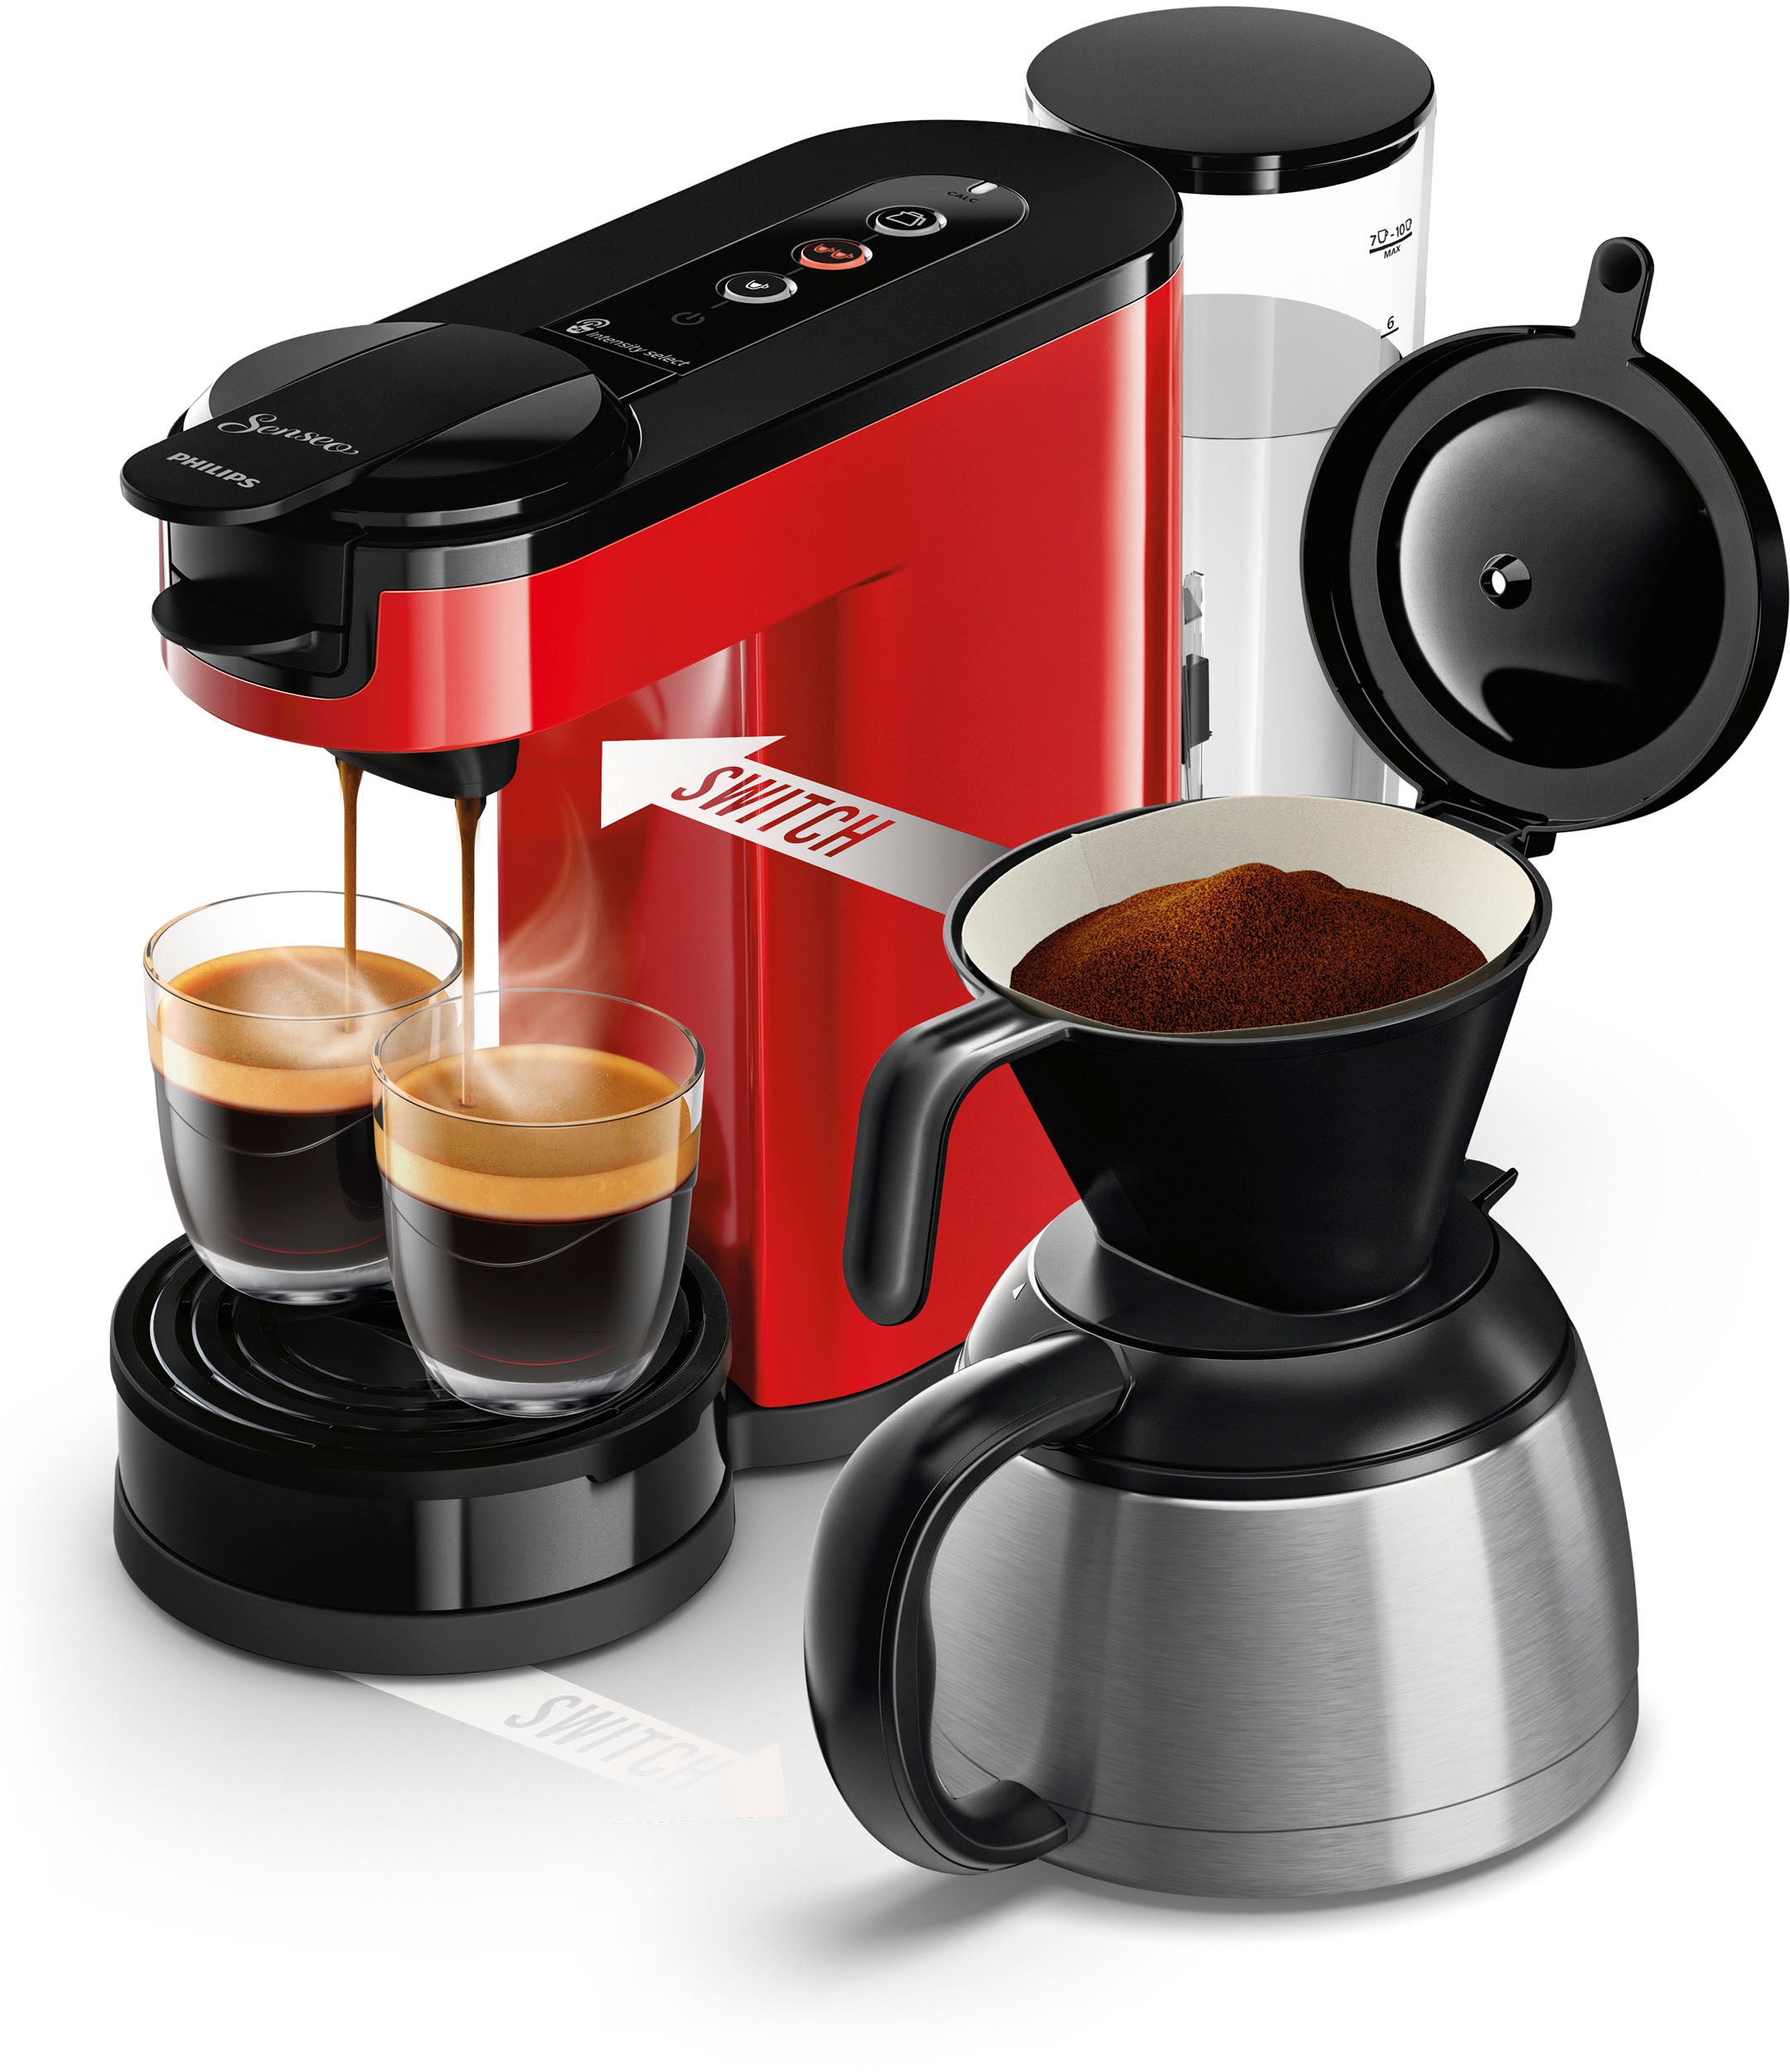 »Switch Philips Senseo 9,90 bei von inkl. im HD6592/84«, UVP Kaffeekanne, Kaffeepadmaschine Wert Kaffeepaddose l online € 1